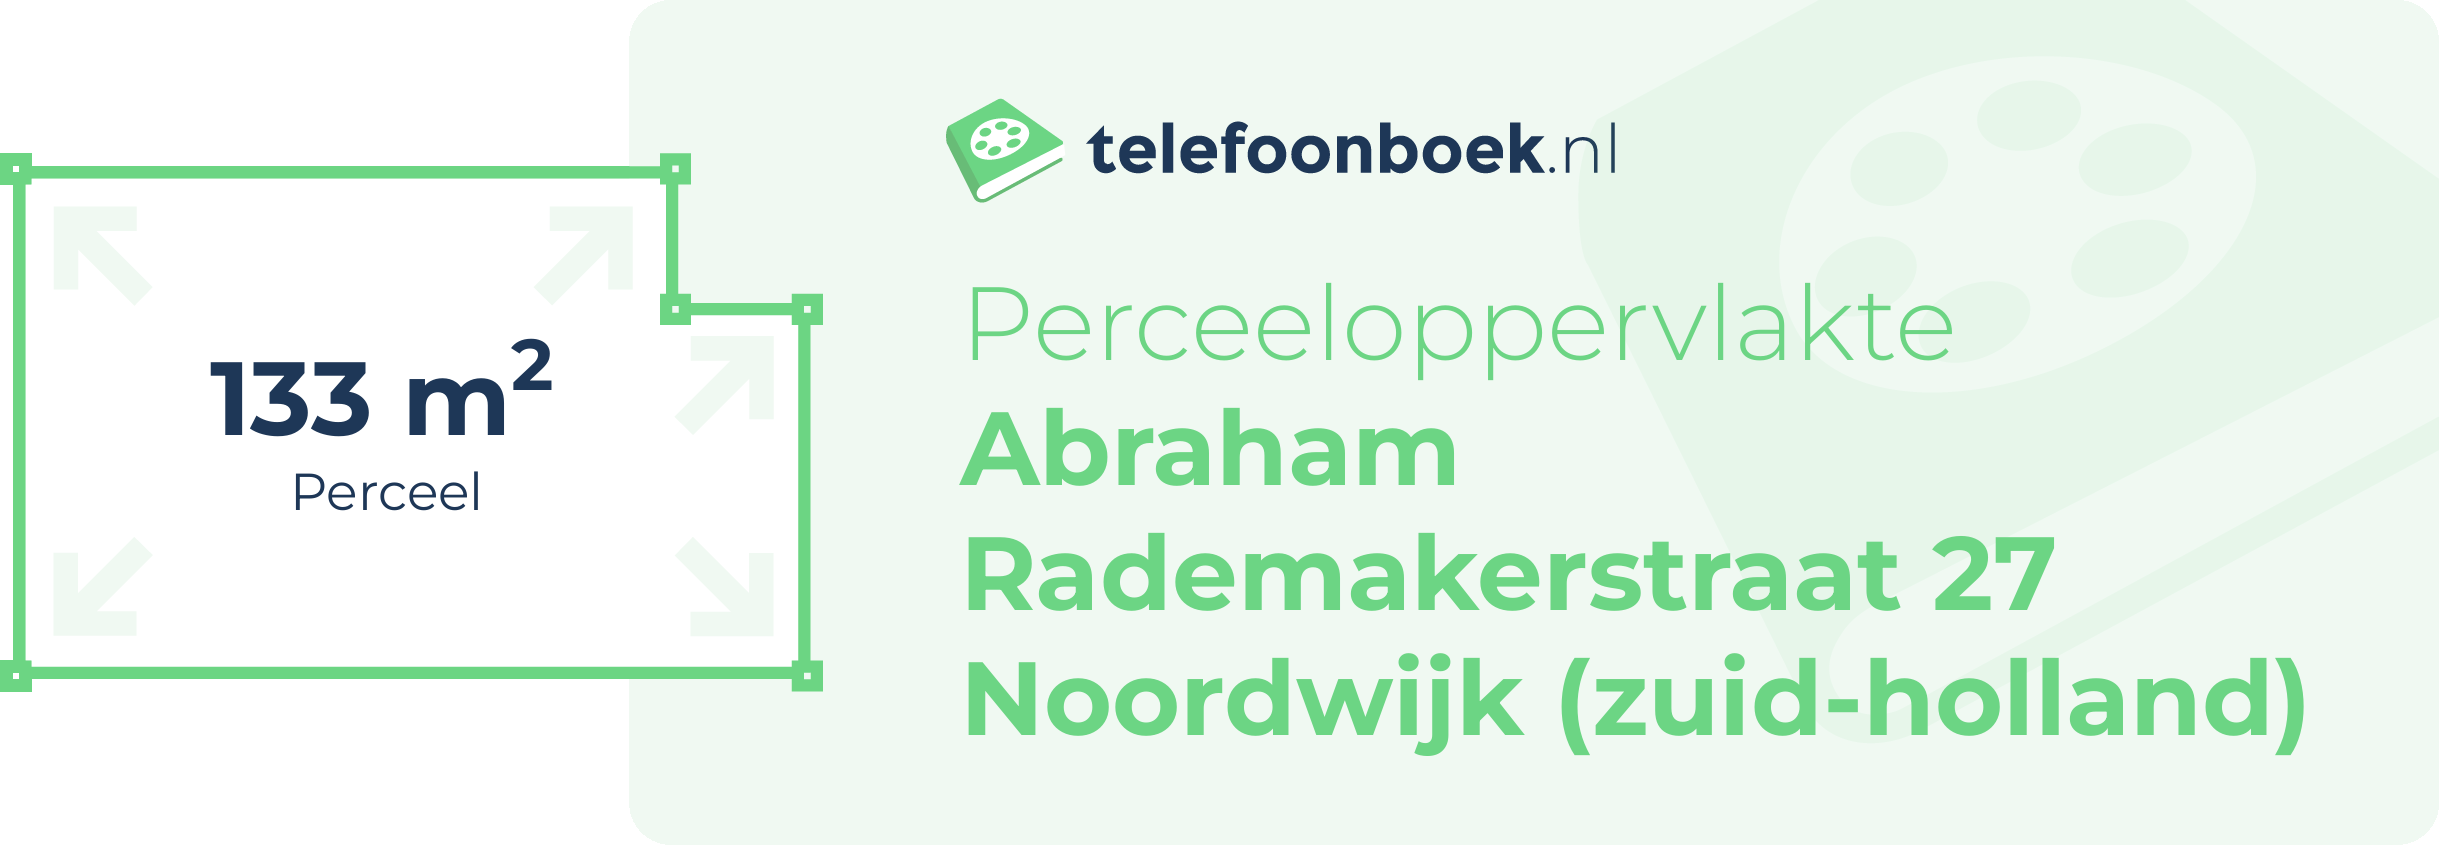 Perceeloppervlakte Abraham Rademakerstraat 27 Noordwijk (Zuid-Holland)